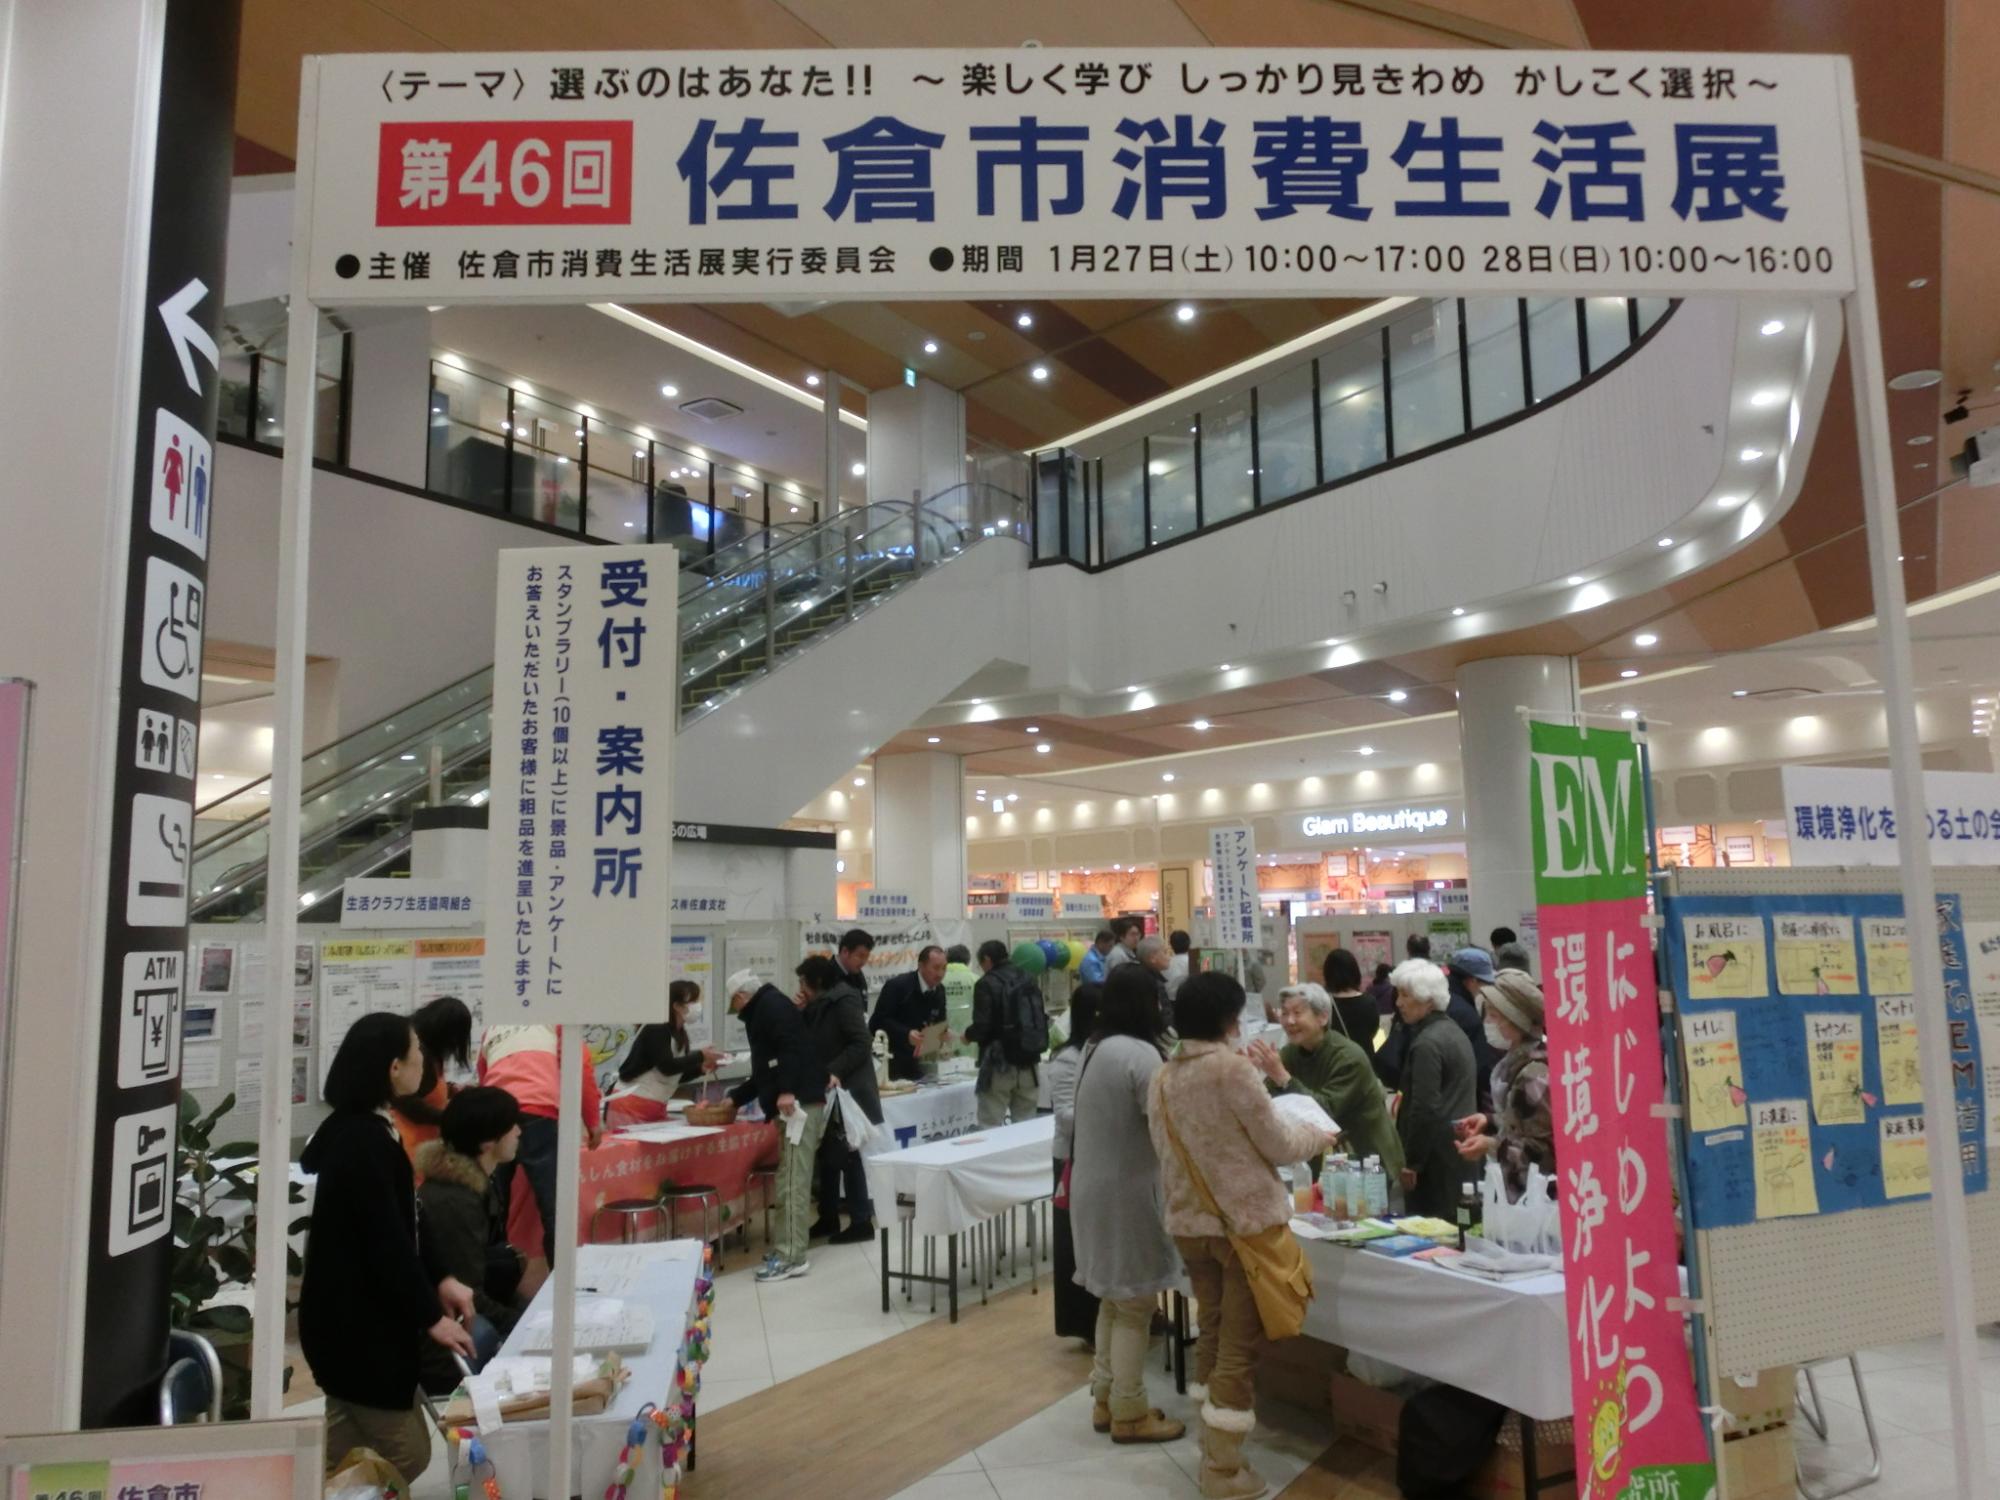 西館1階さくらの広場で佐倉市消費生活展が開かれており、沢山のお客さんで賑わっている様子の写真